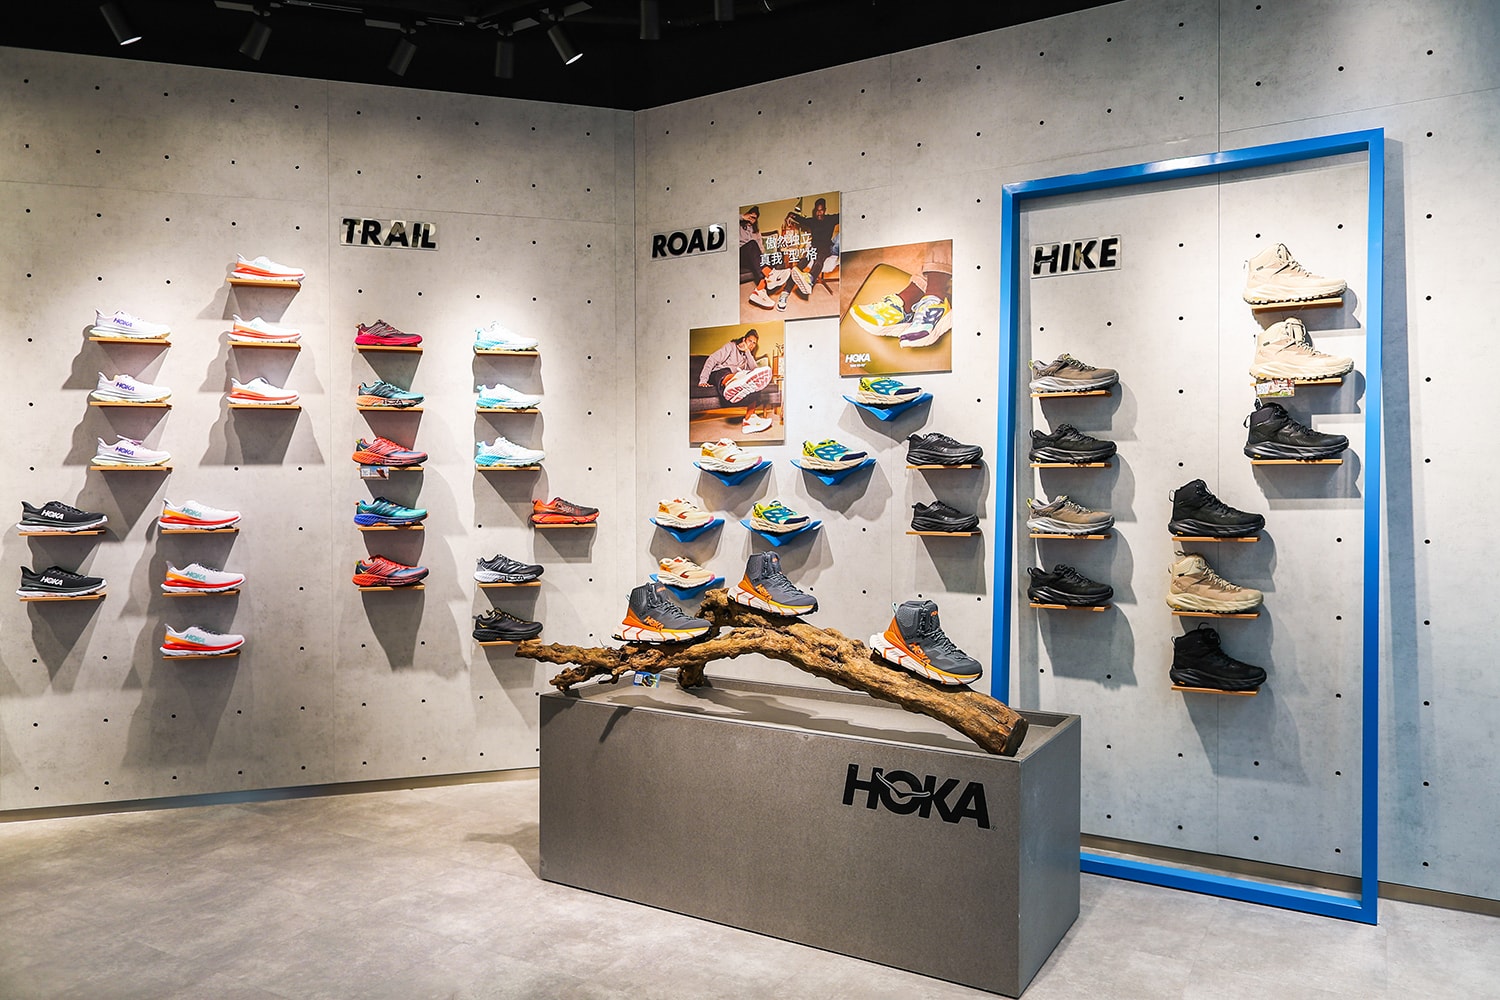 HOKA ONE ONE 全球首家直营品牌体验店开业